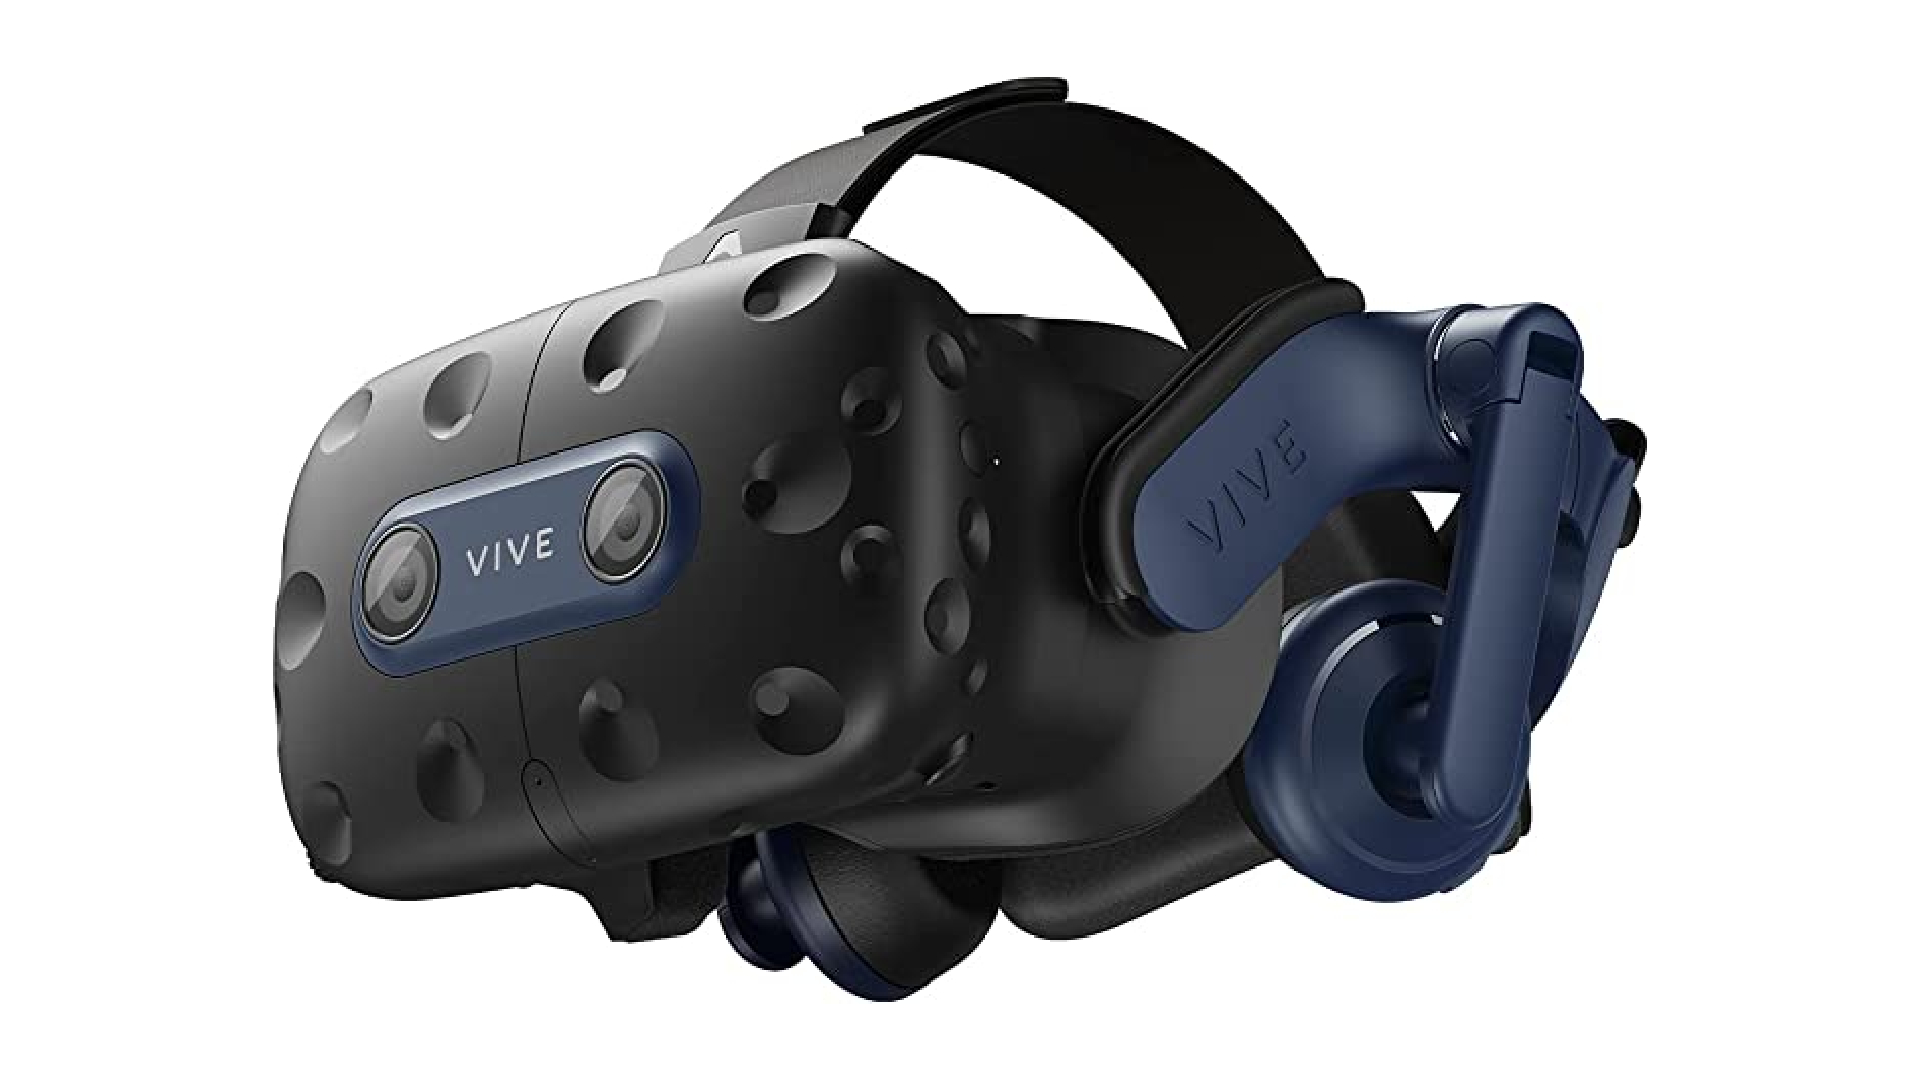 ชุดหูฟัง VR ที่ดีที่สุด: HTC Vive Pro 2 บนฉากหลังสีขาว